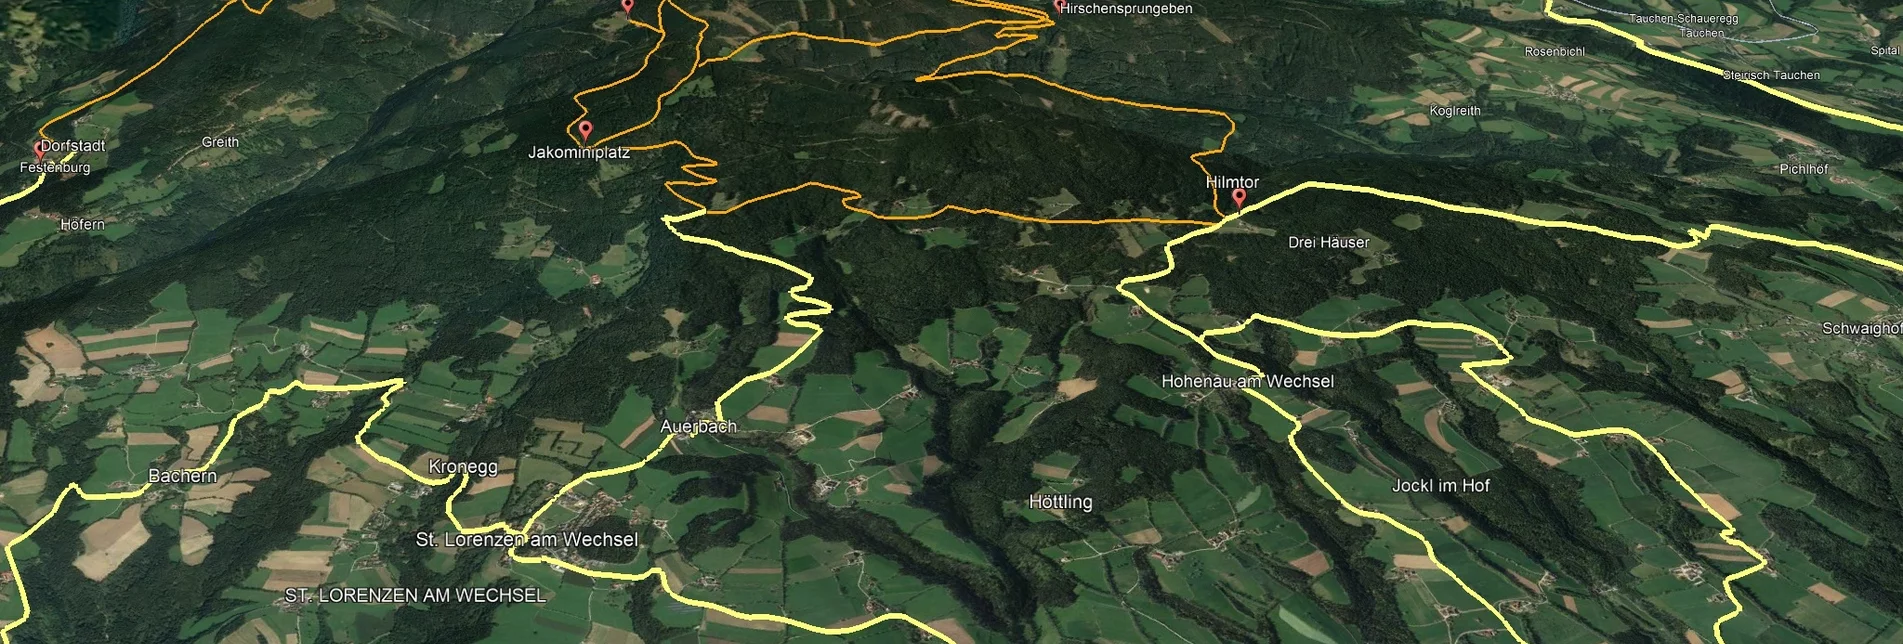 Mountainbike VORSCHAU Steirische Wexl Trails - Zubringer Burgfeld nach Bruck an der Lafnitz (Anbindung) - Touren-Impression #1 | © Verein Tourismusentwicklung Steirischer Wechsel